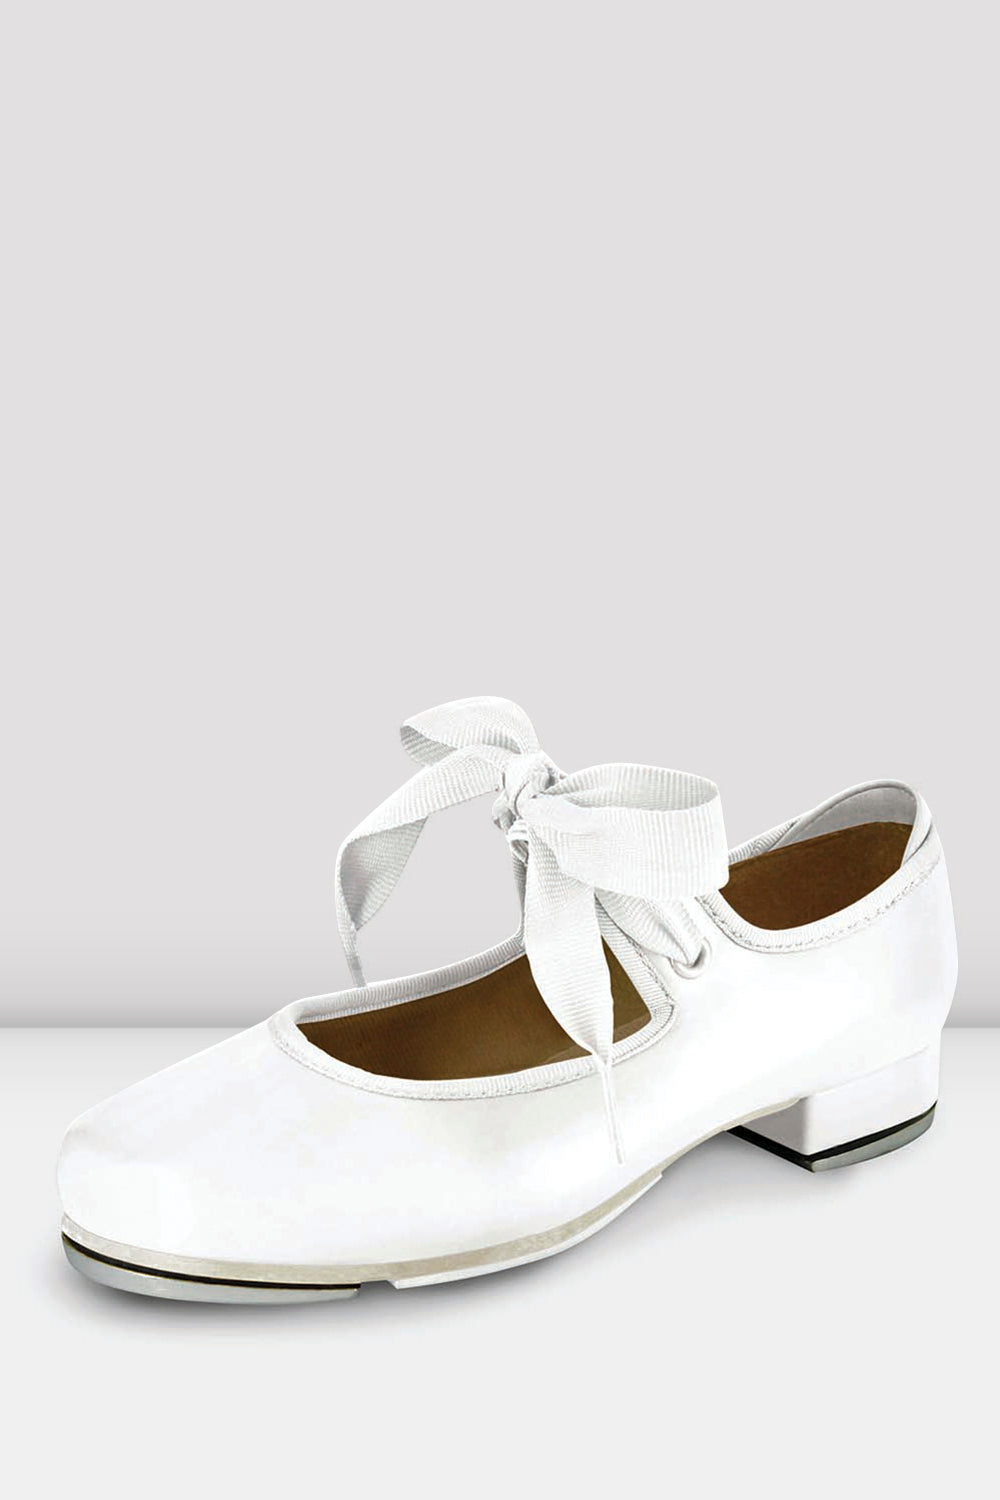 Amazon.com | Bloch womens Tap-on dance shoes, Black, 4 US | Ballet & Dance